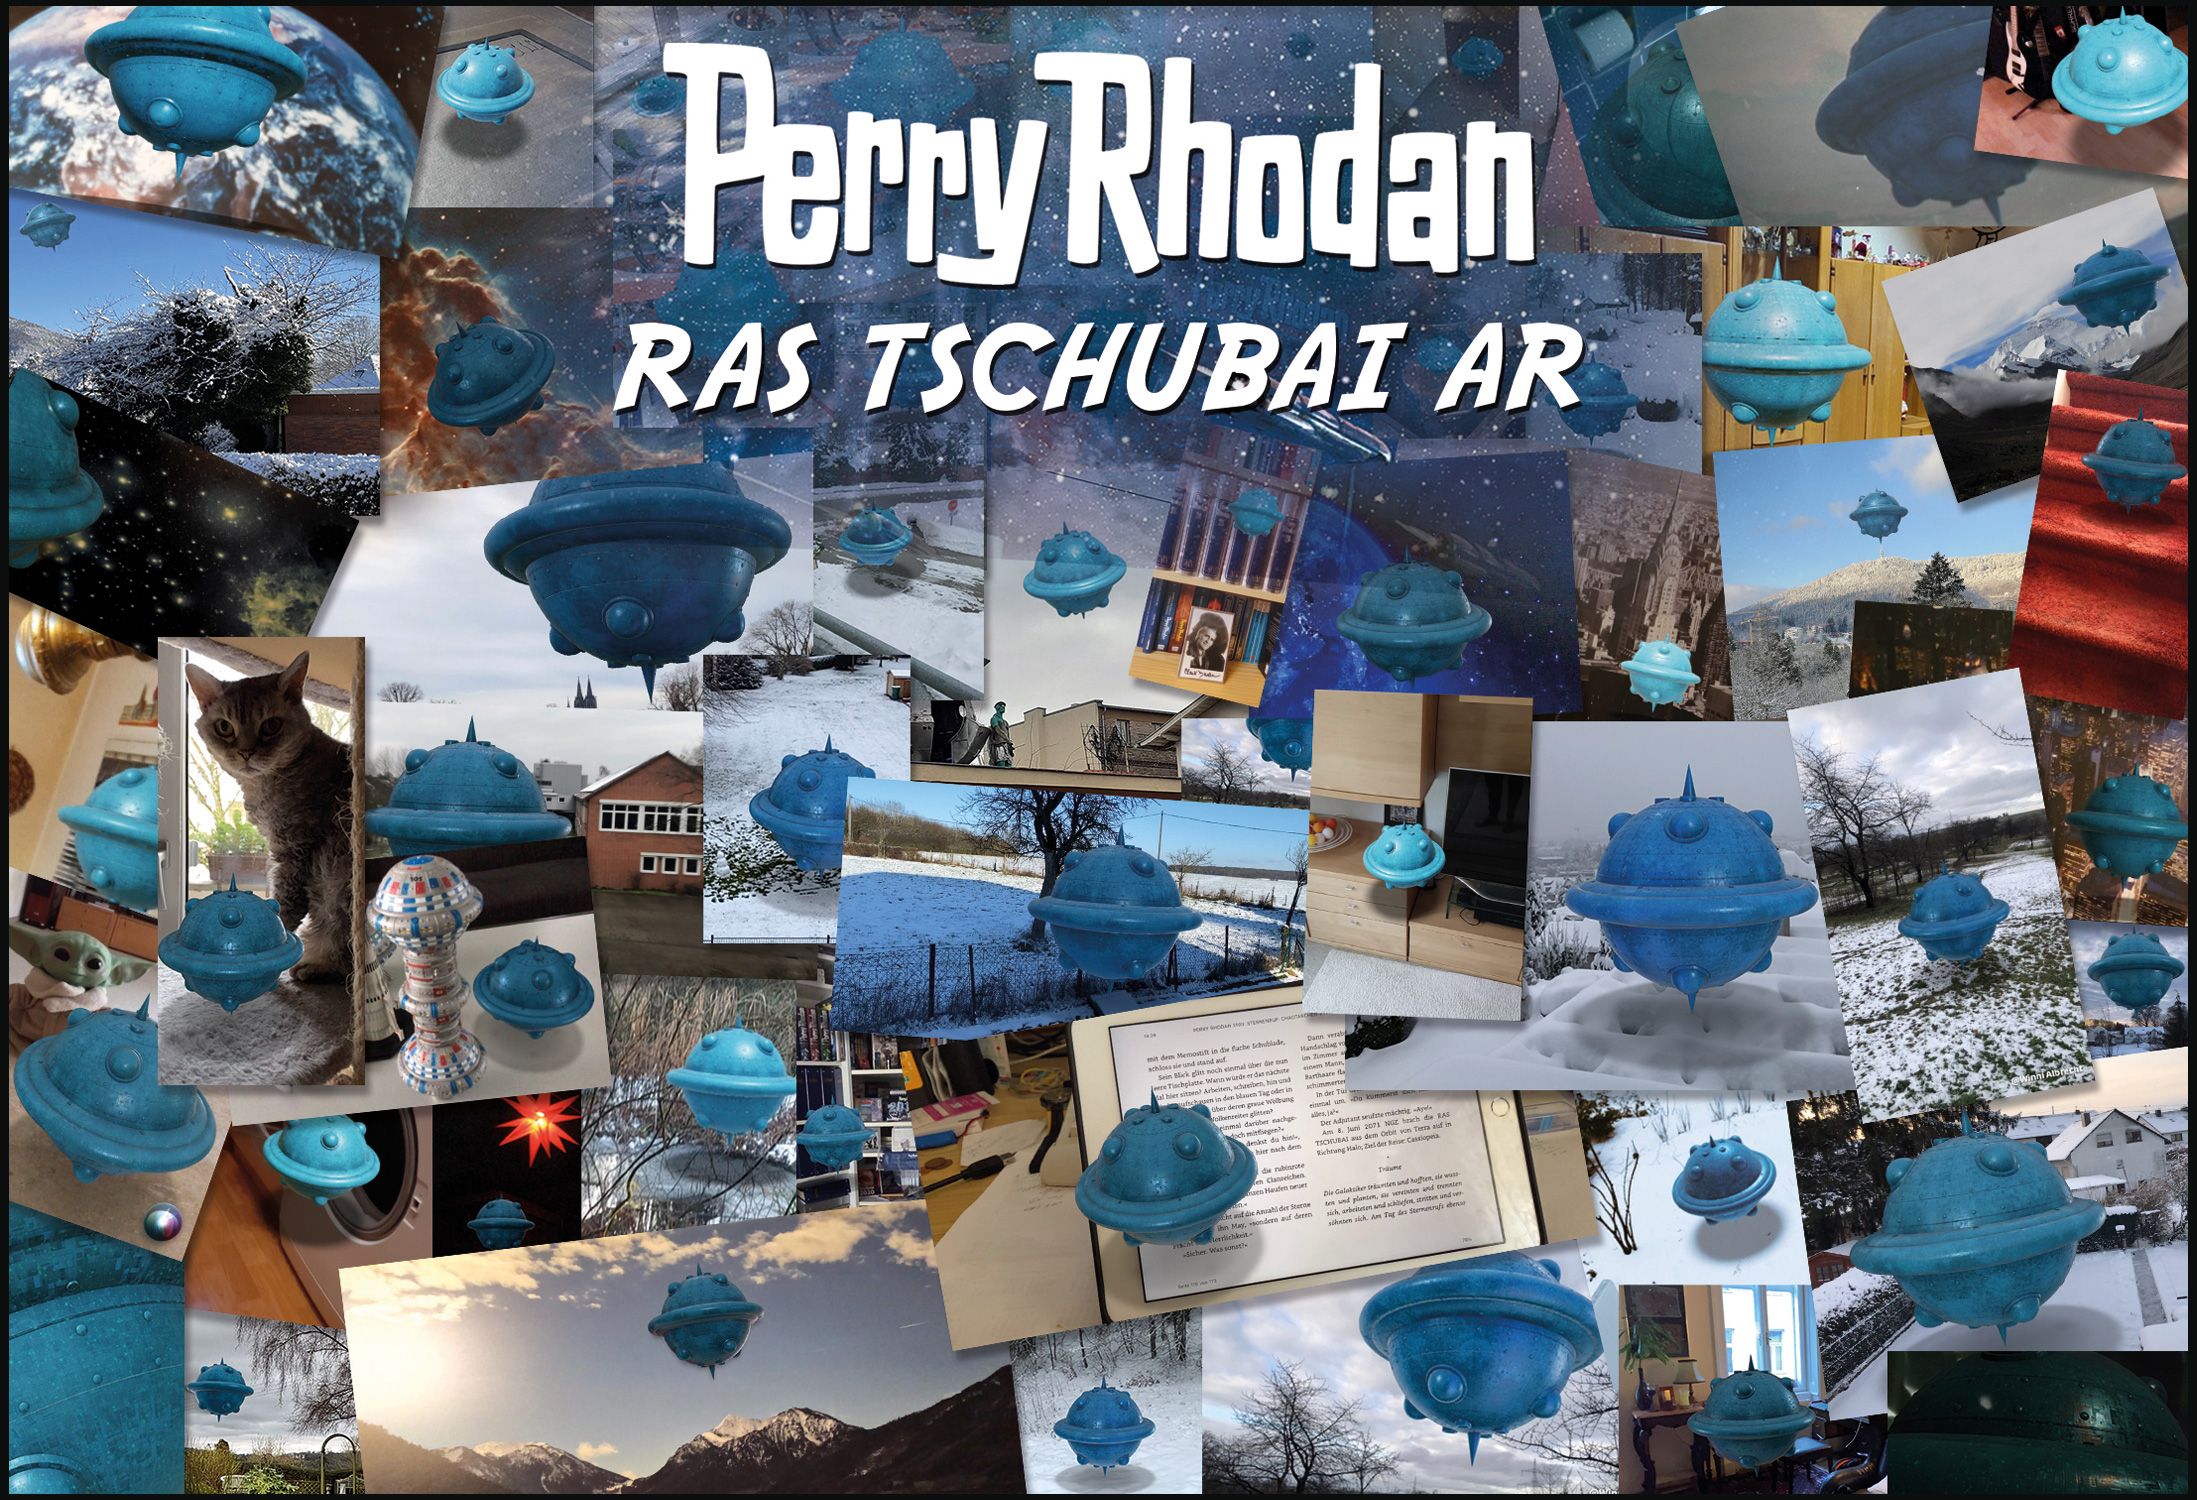 Perry Rhodan 3100 AR, RAS TSCHUBAI AR, Collage